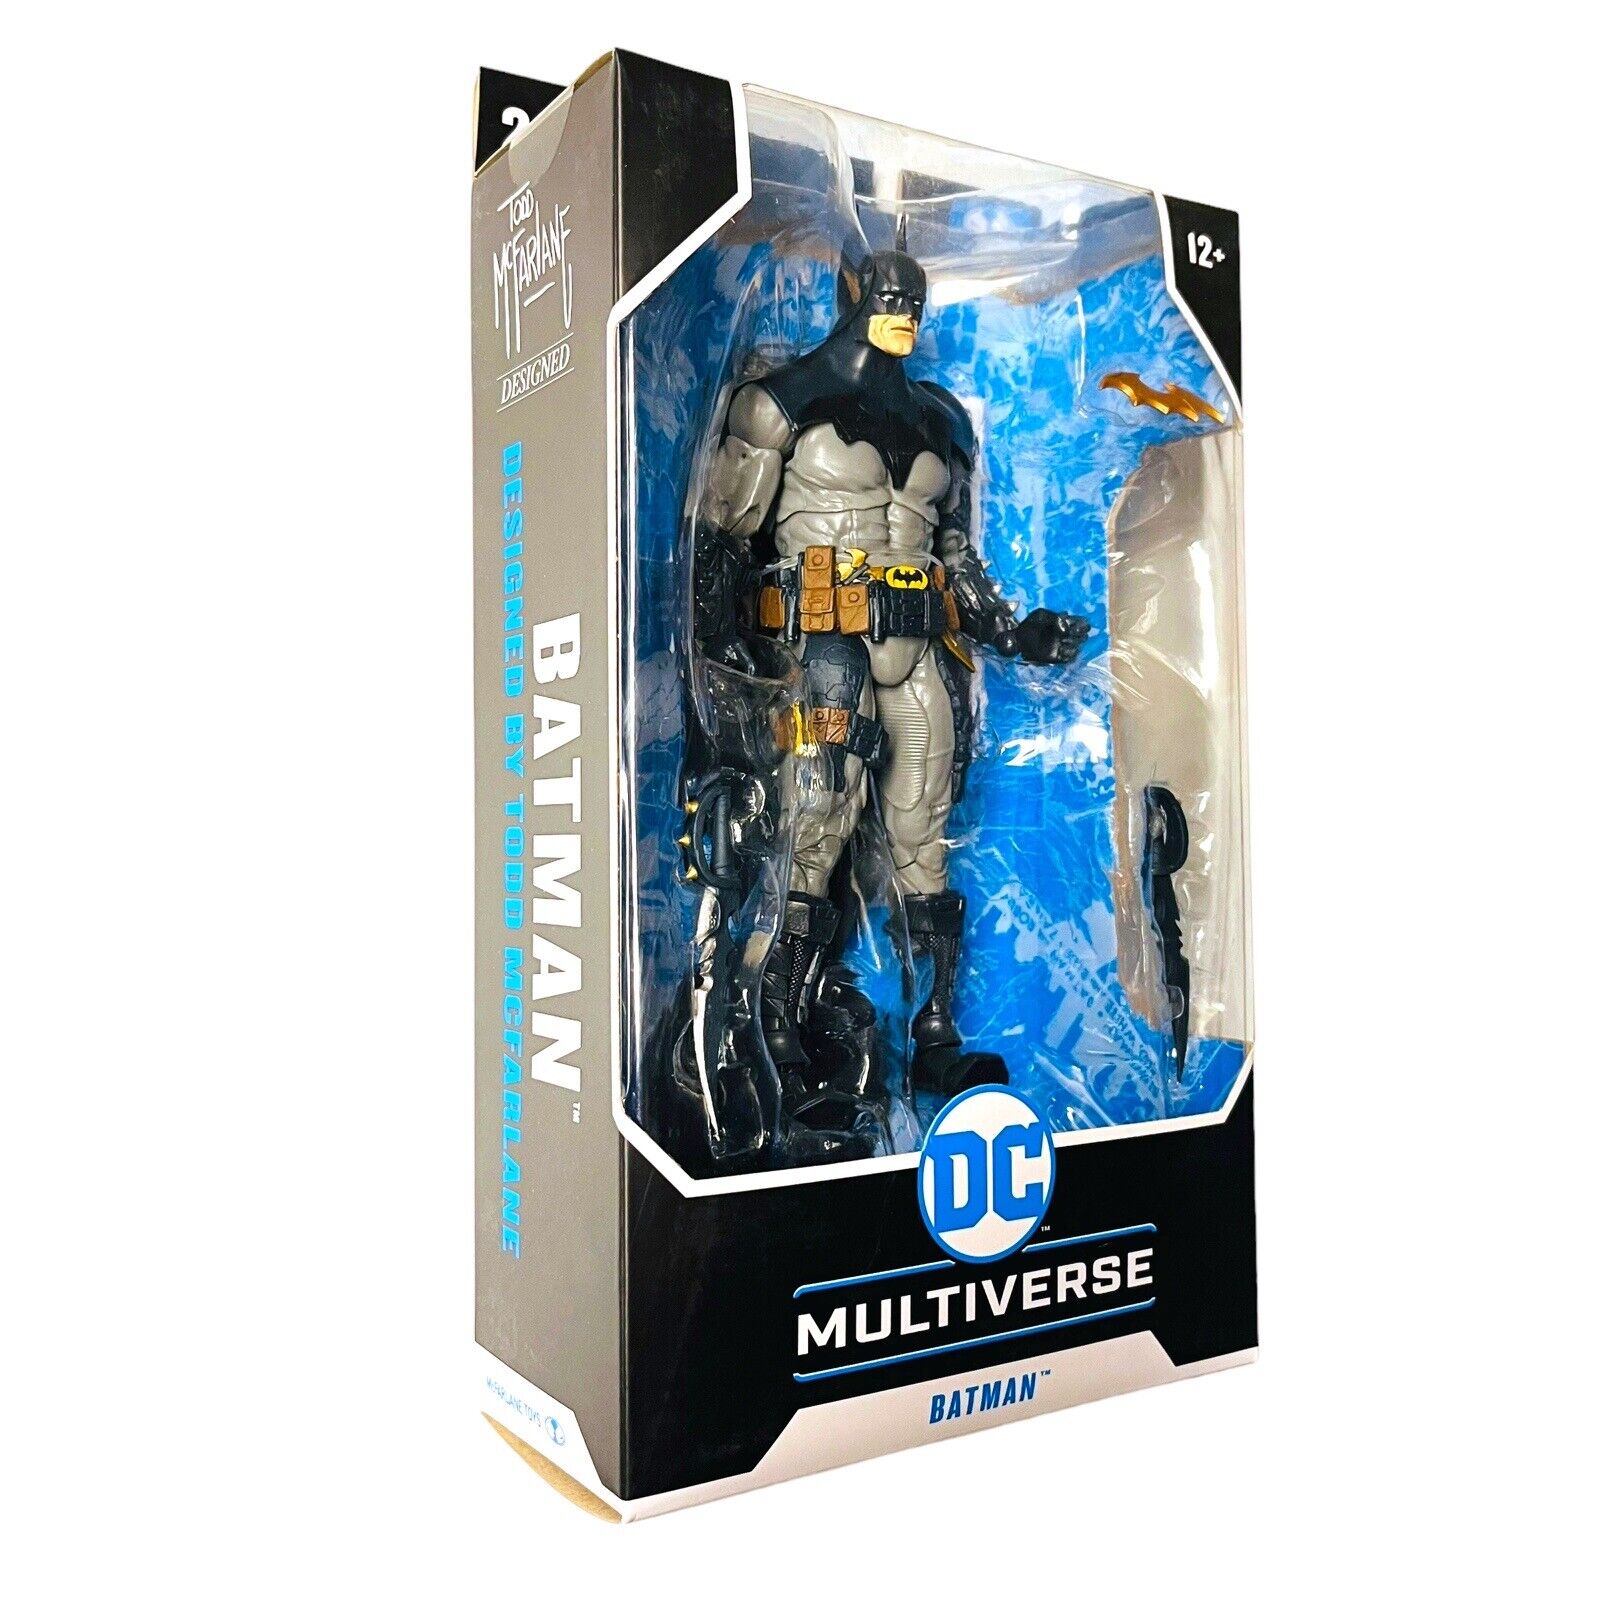 McFarlane Batman DC Multiverse 7 inch Figure Designed by Todd Blue Version FAST McFarlane Toys 15006 - фотография #4